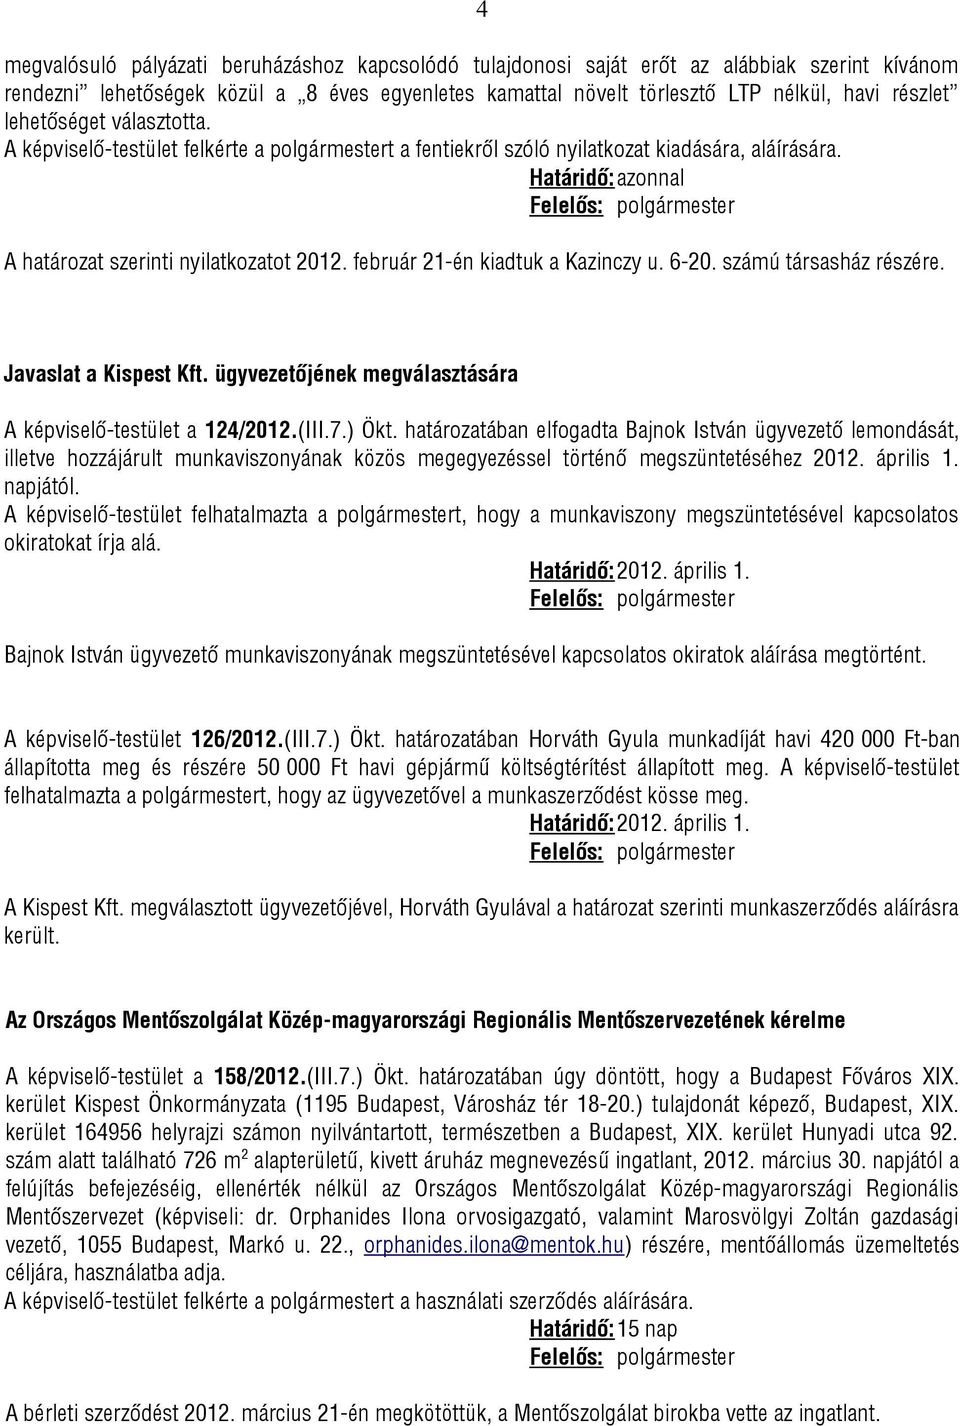 február 21-én kiadtuk a Kazinczy u. 6-20. számú társasház részére. Javaslat a Kispest Kft. ügyvezetőjének megválasztására A képviselő-testület a 124/2012.(III.7.) Ökt.